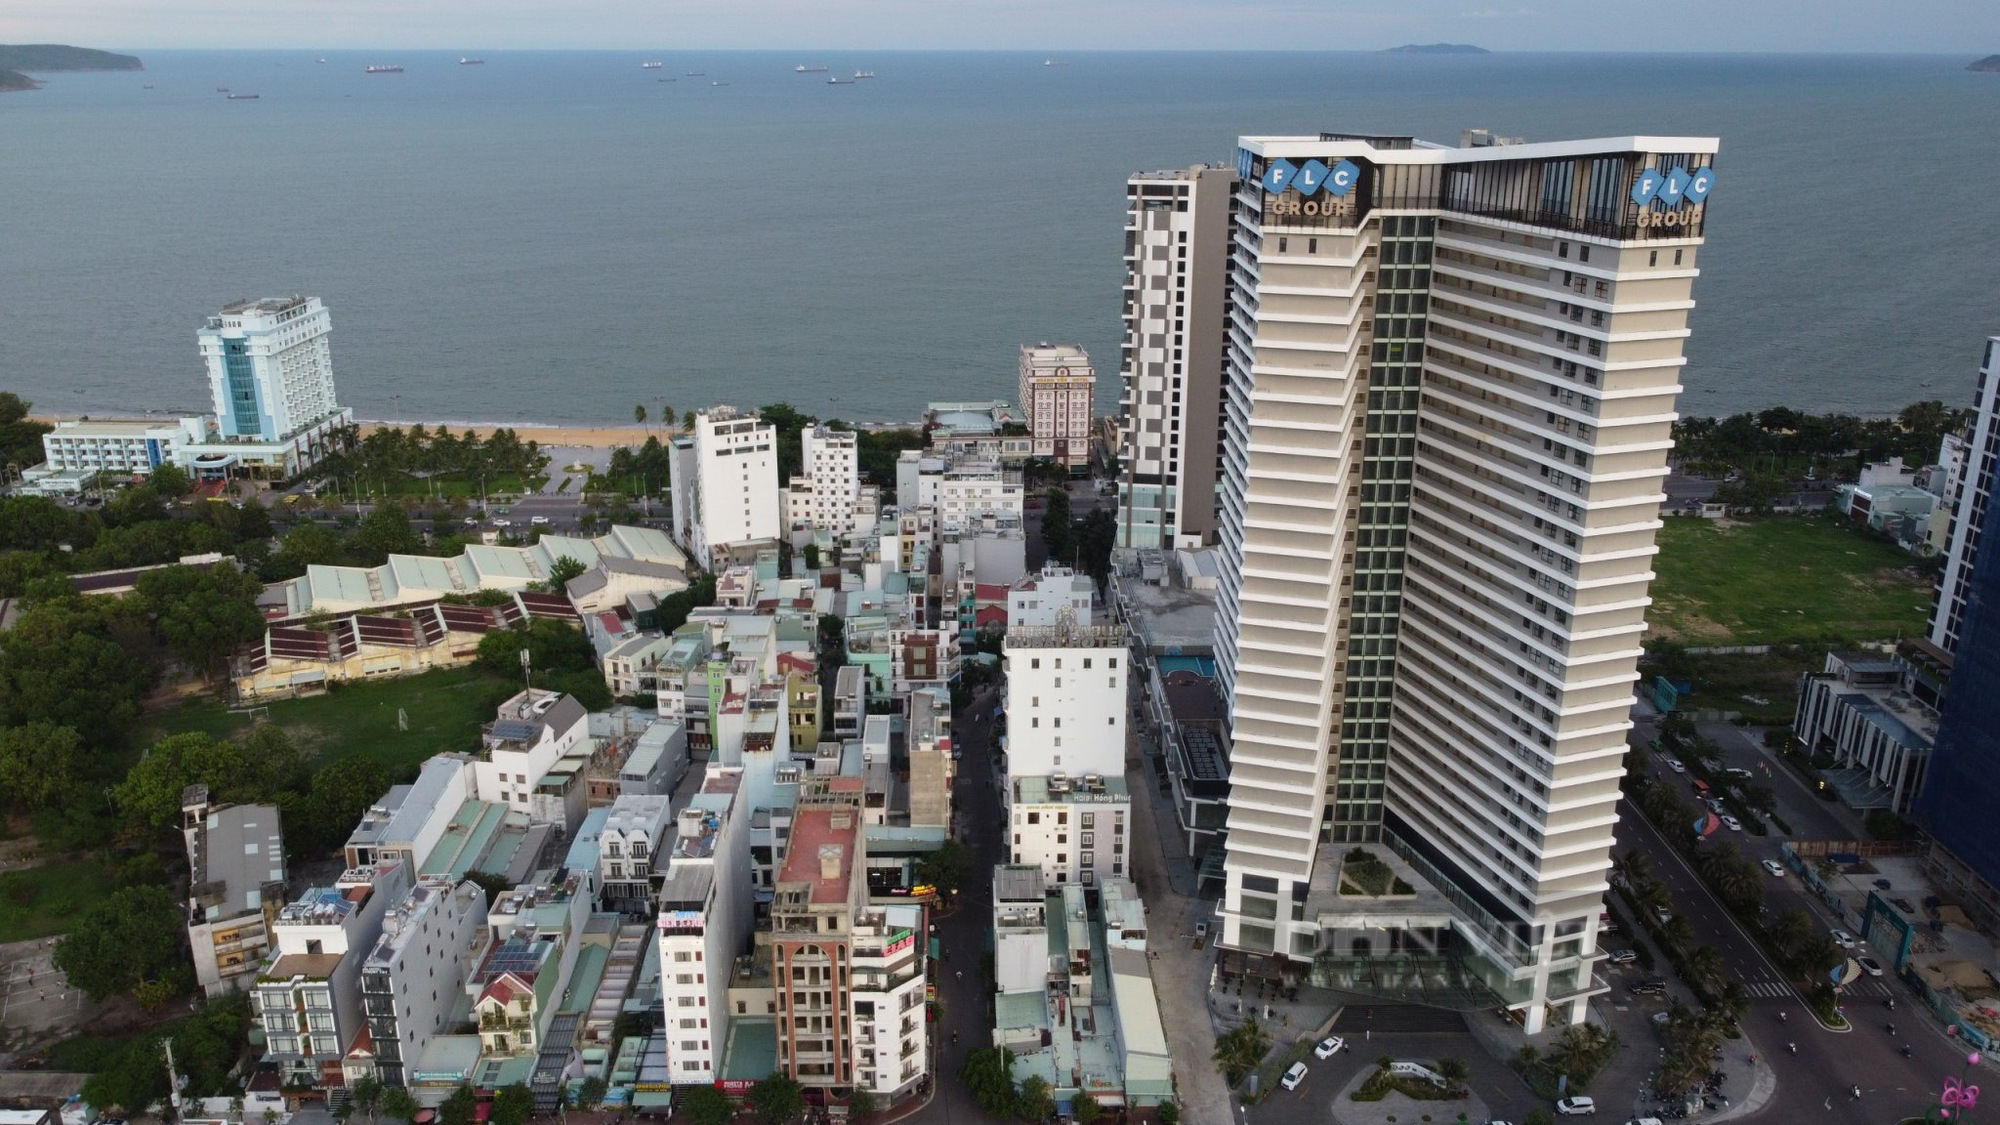 Tạm đình chỉ hoạt động khối nhà cao tầng của dự án FLC Sea Tower Quy Nhơn tại Bình Định  - Ảnh 1.